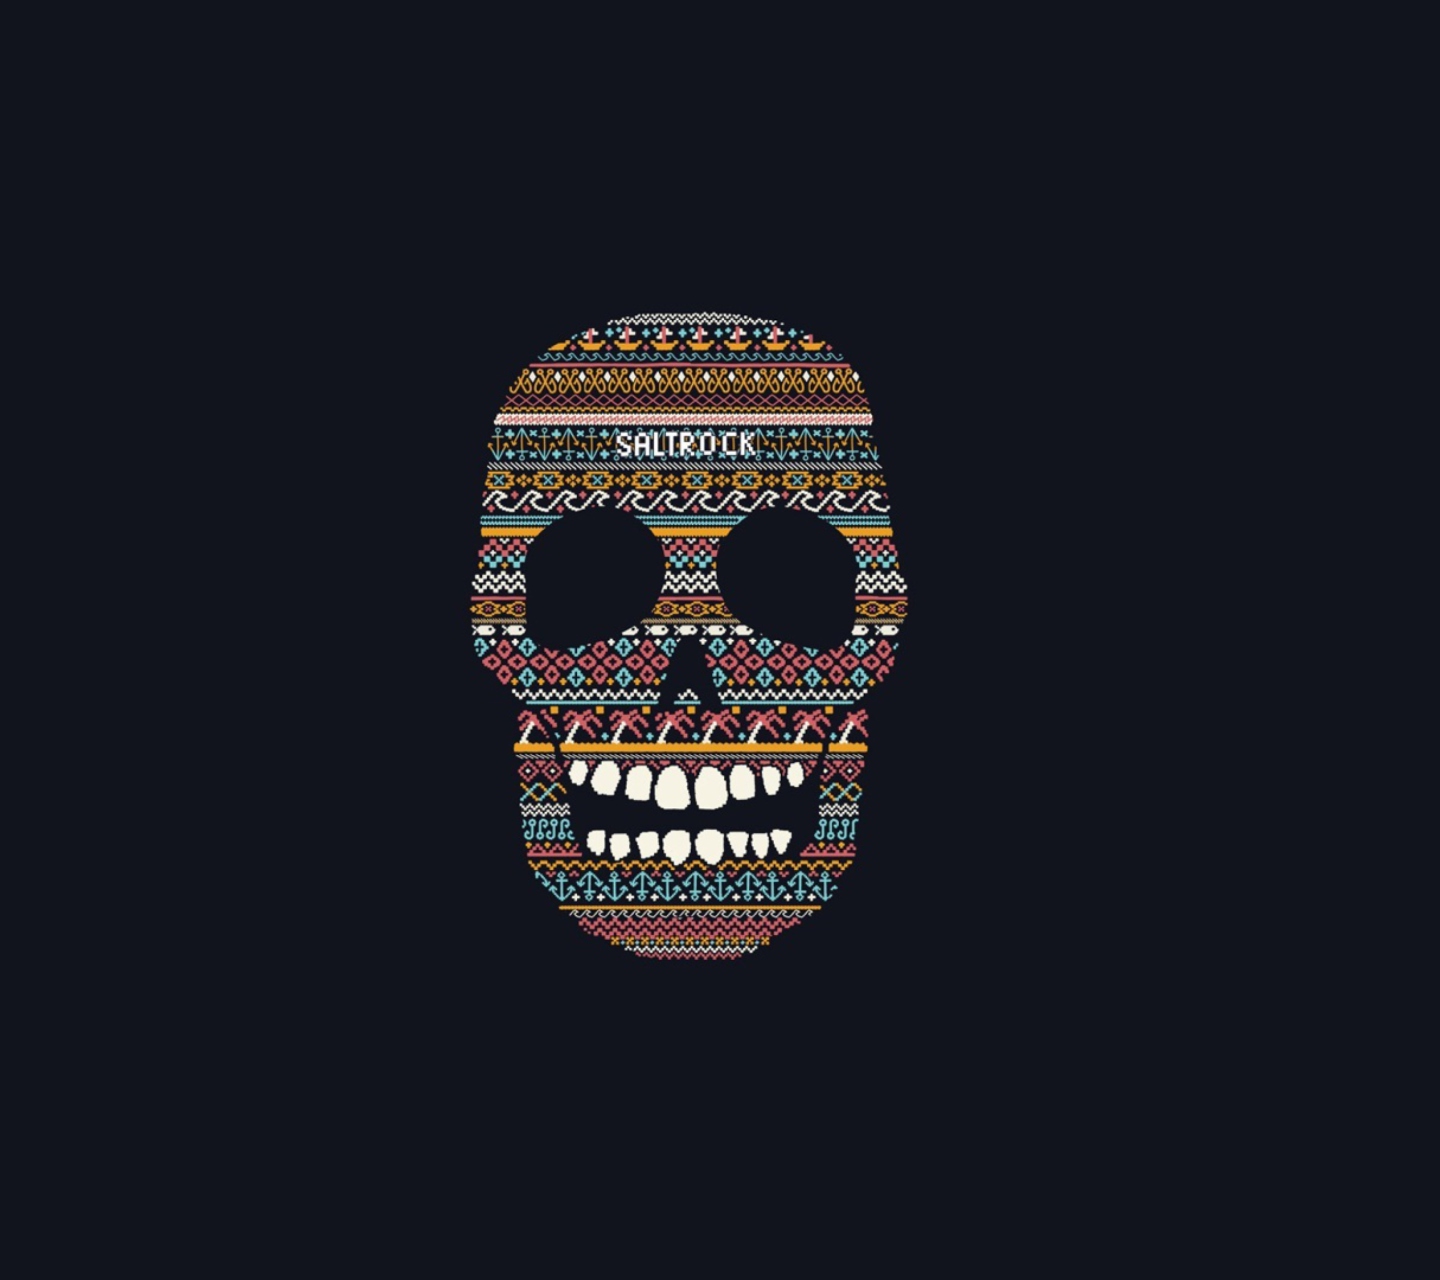 Das Funny Skull Wallpaper 1440x1280